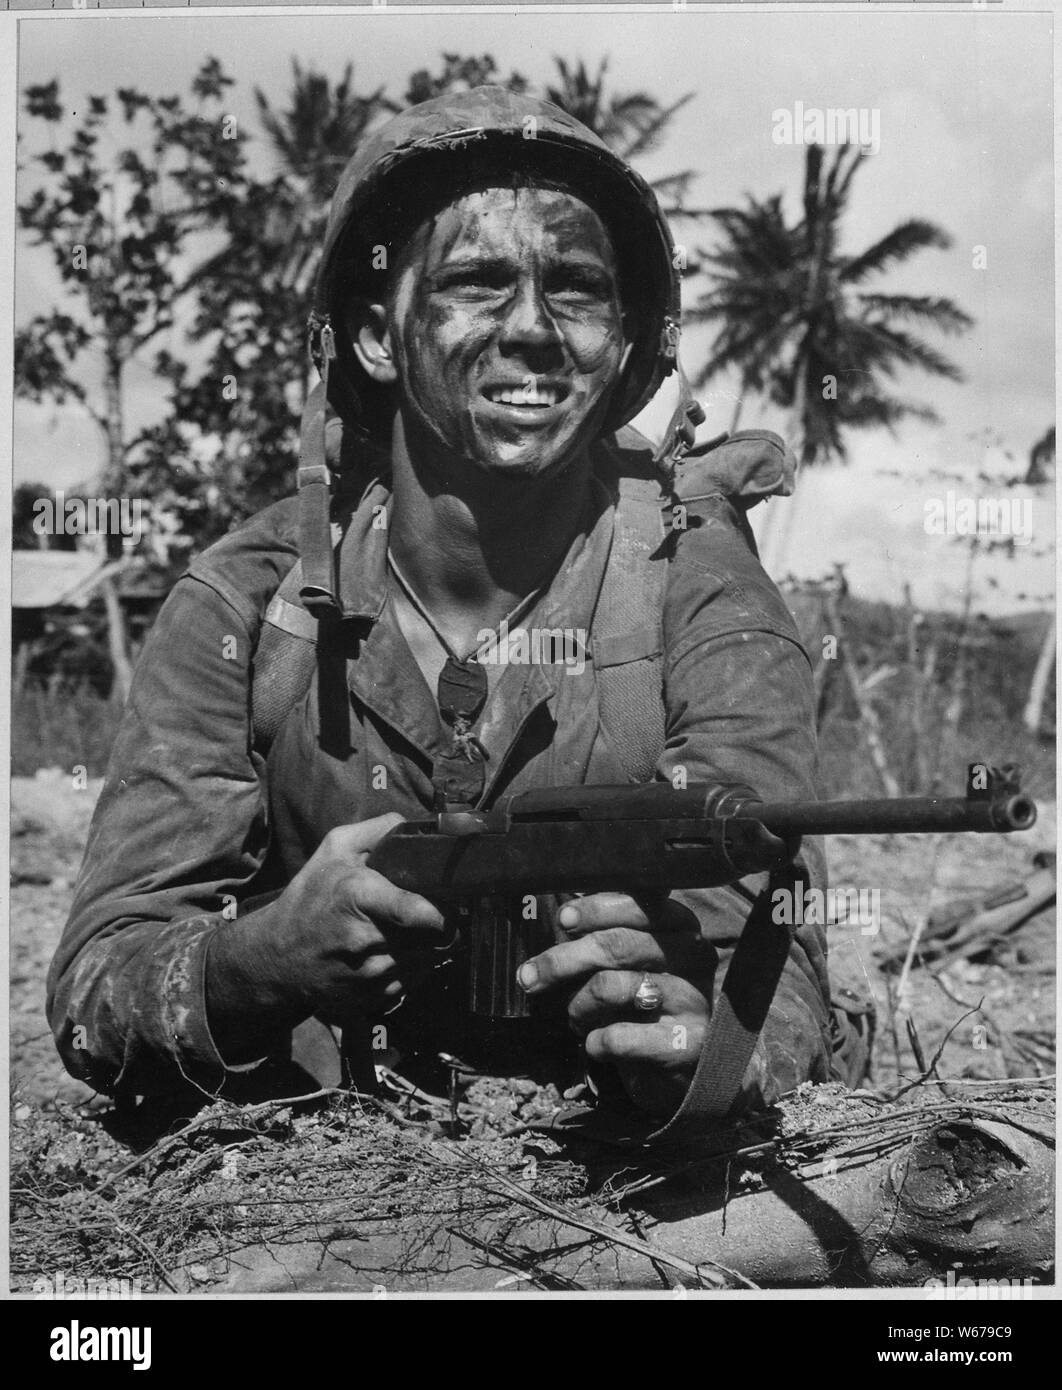 Marine erwartet Signal im Kampf Guam von Japanisch zu erlangen.; Allgemeine Hinweise: Verwenden Sie Krieg und Konflikt Nummer 1194 bei der Bestellung eine Reproduktion oder Anforderung von Informationen zu diesem Bild. Stockfoto